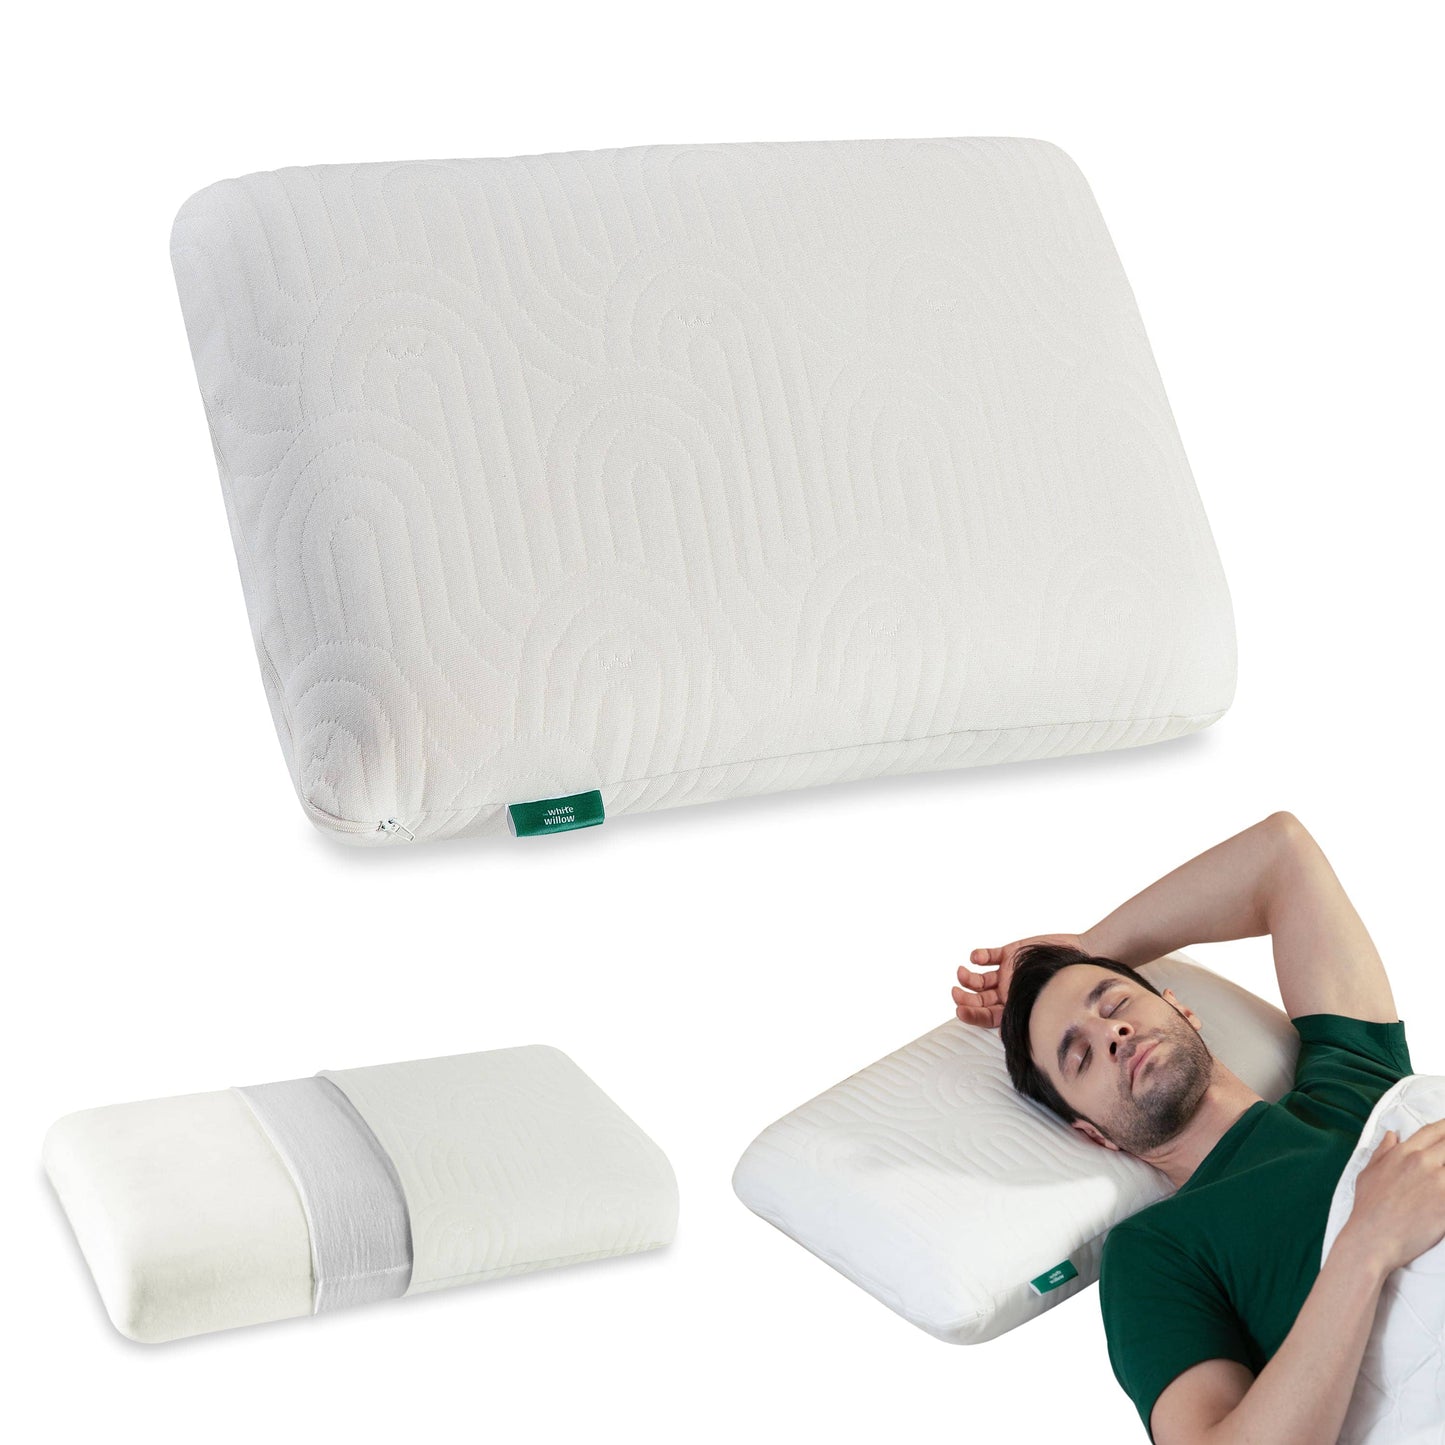 Cypress - Memory Foam Pillow - Regular - Medium Firm Regular Pillow The White Willow Medium 4"H Standard 22x14 Pack of 1 Multi